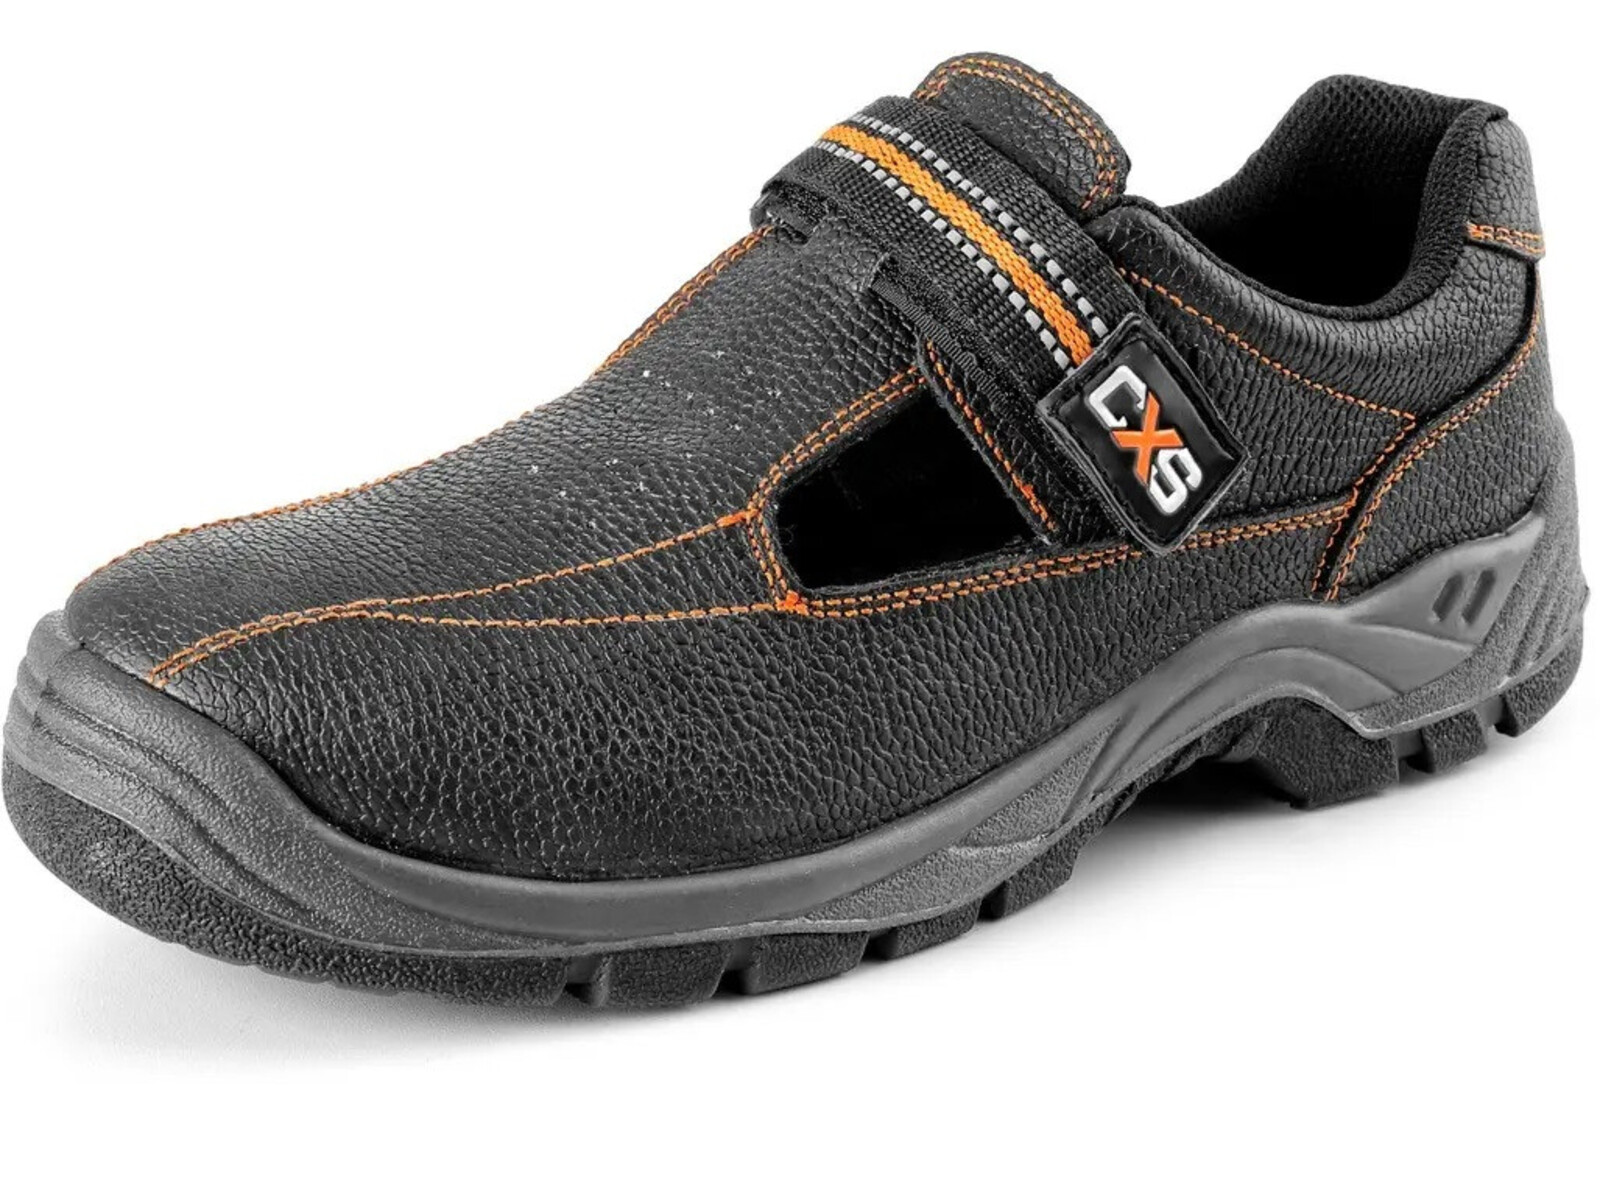 Pracovné sandále CXS Stone Nefrit O1 FO SRC - veľkosť: 35, farba: čierna/oranžová